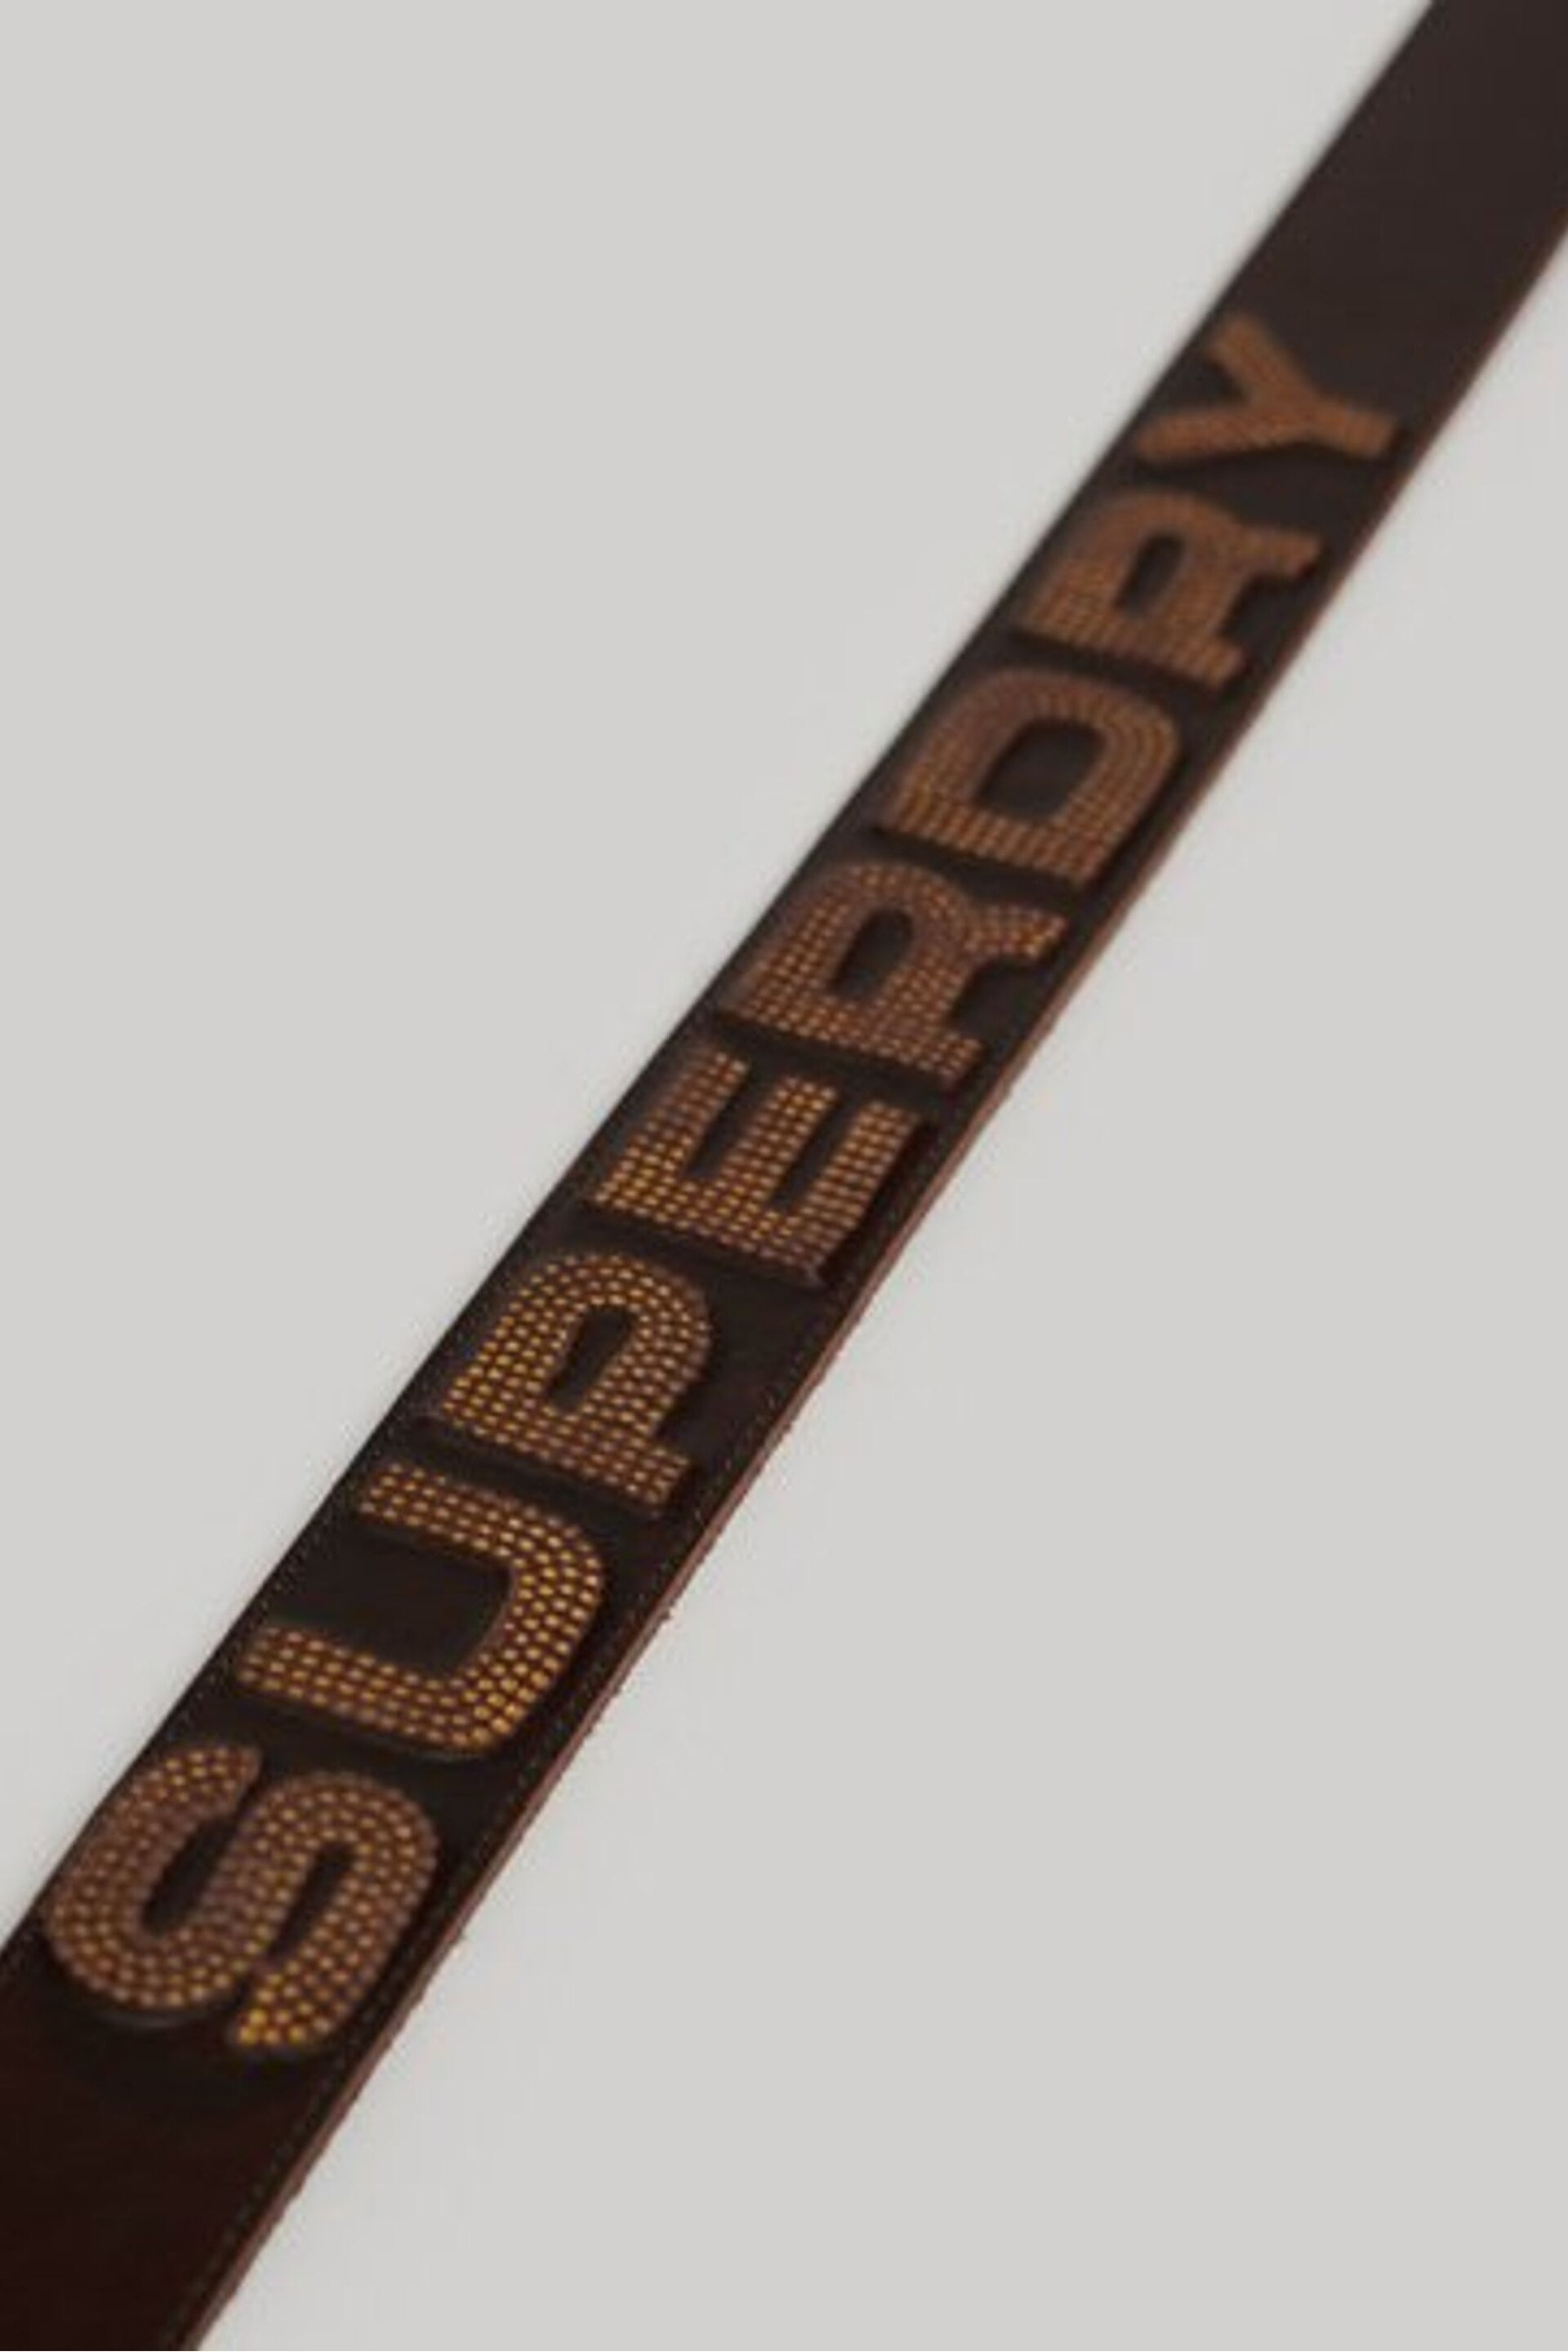 Superdry Natural Vintage Branded Belt - Image 1 of 1